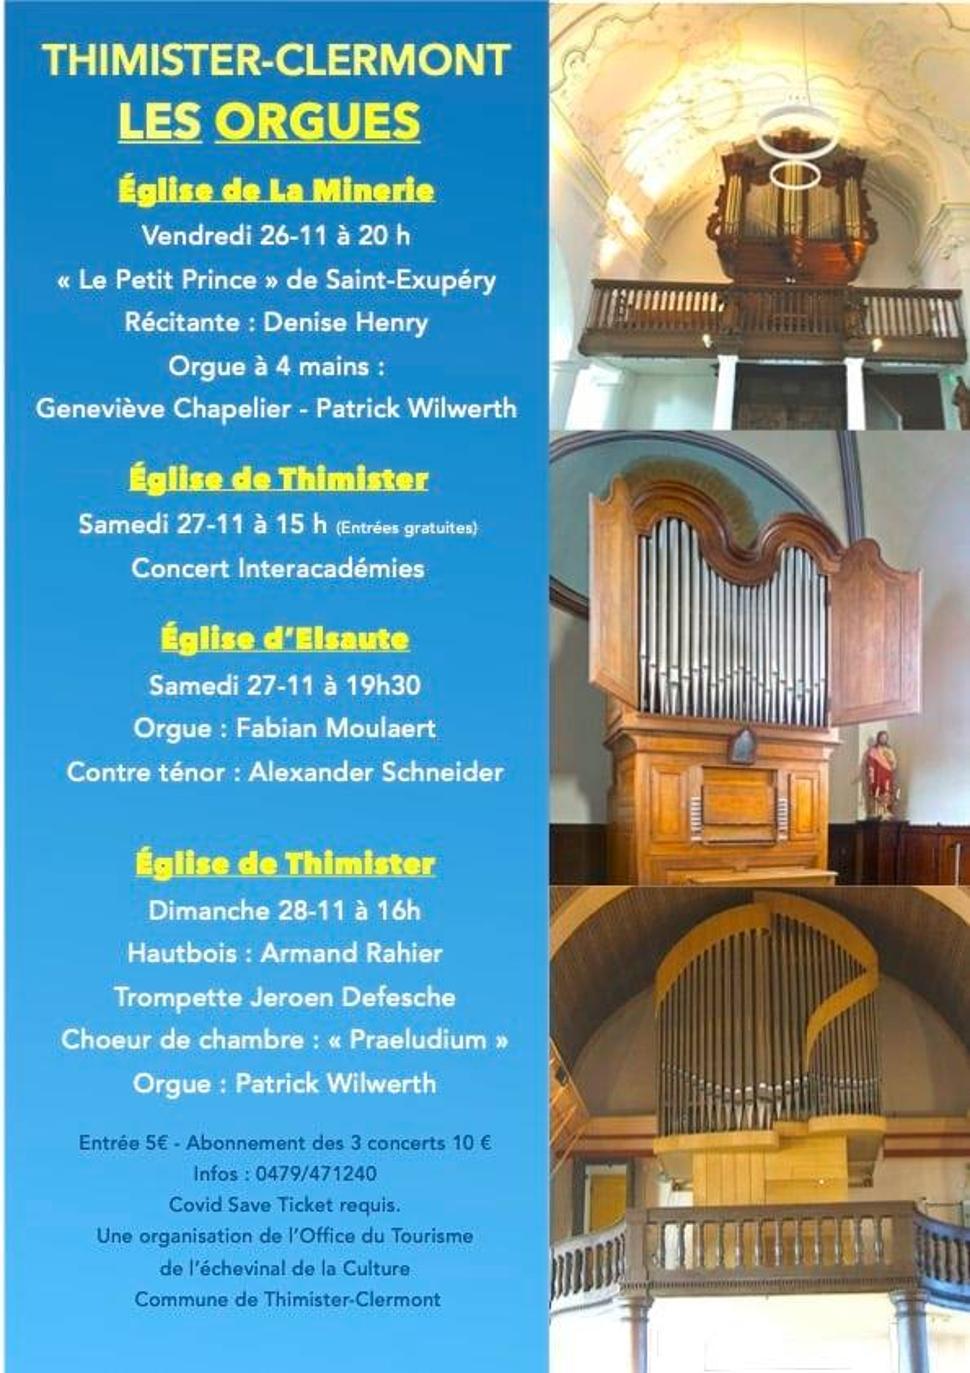 Concert d'orgues à orgues ©Commune de Thimister-Clermont